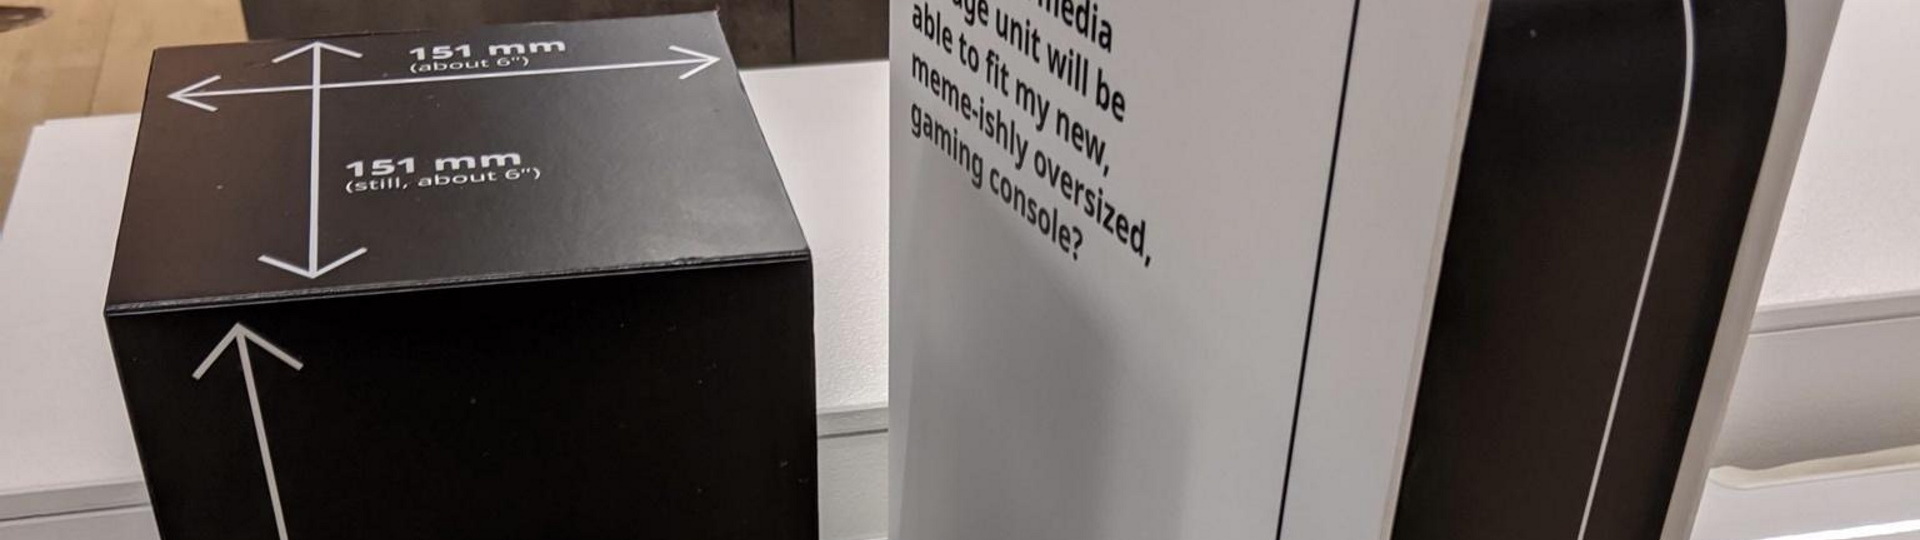 Ikea ve svých obchodech nabízí papírové PS5 pro vyzkoušení v novém nábytku | Novinky